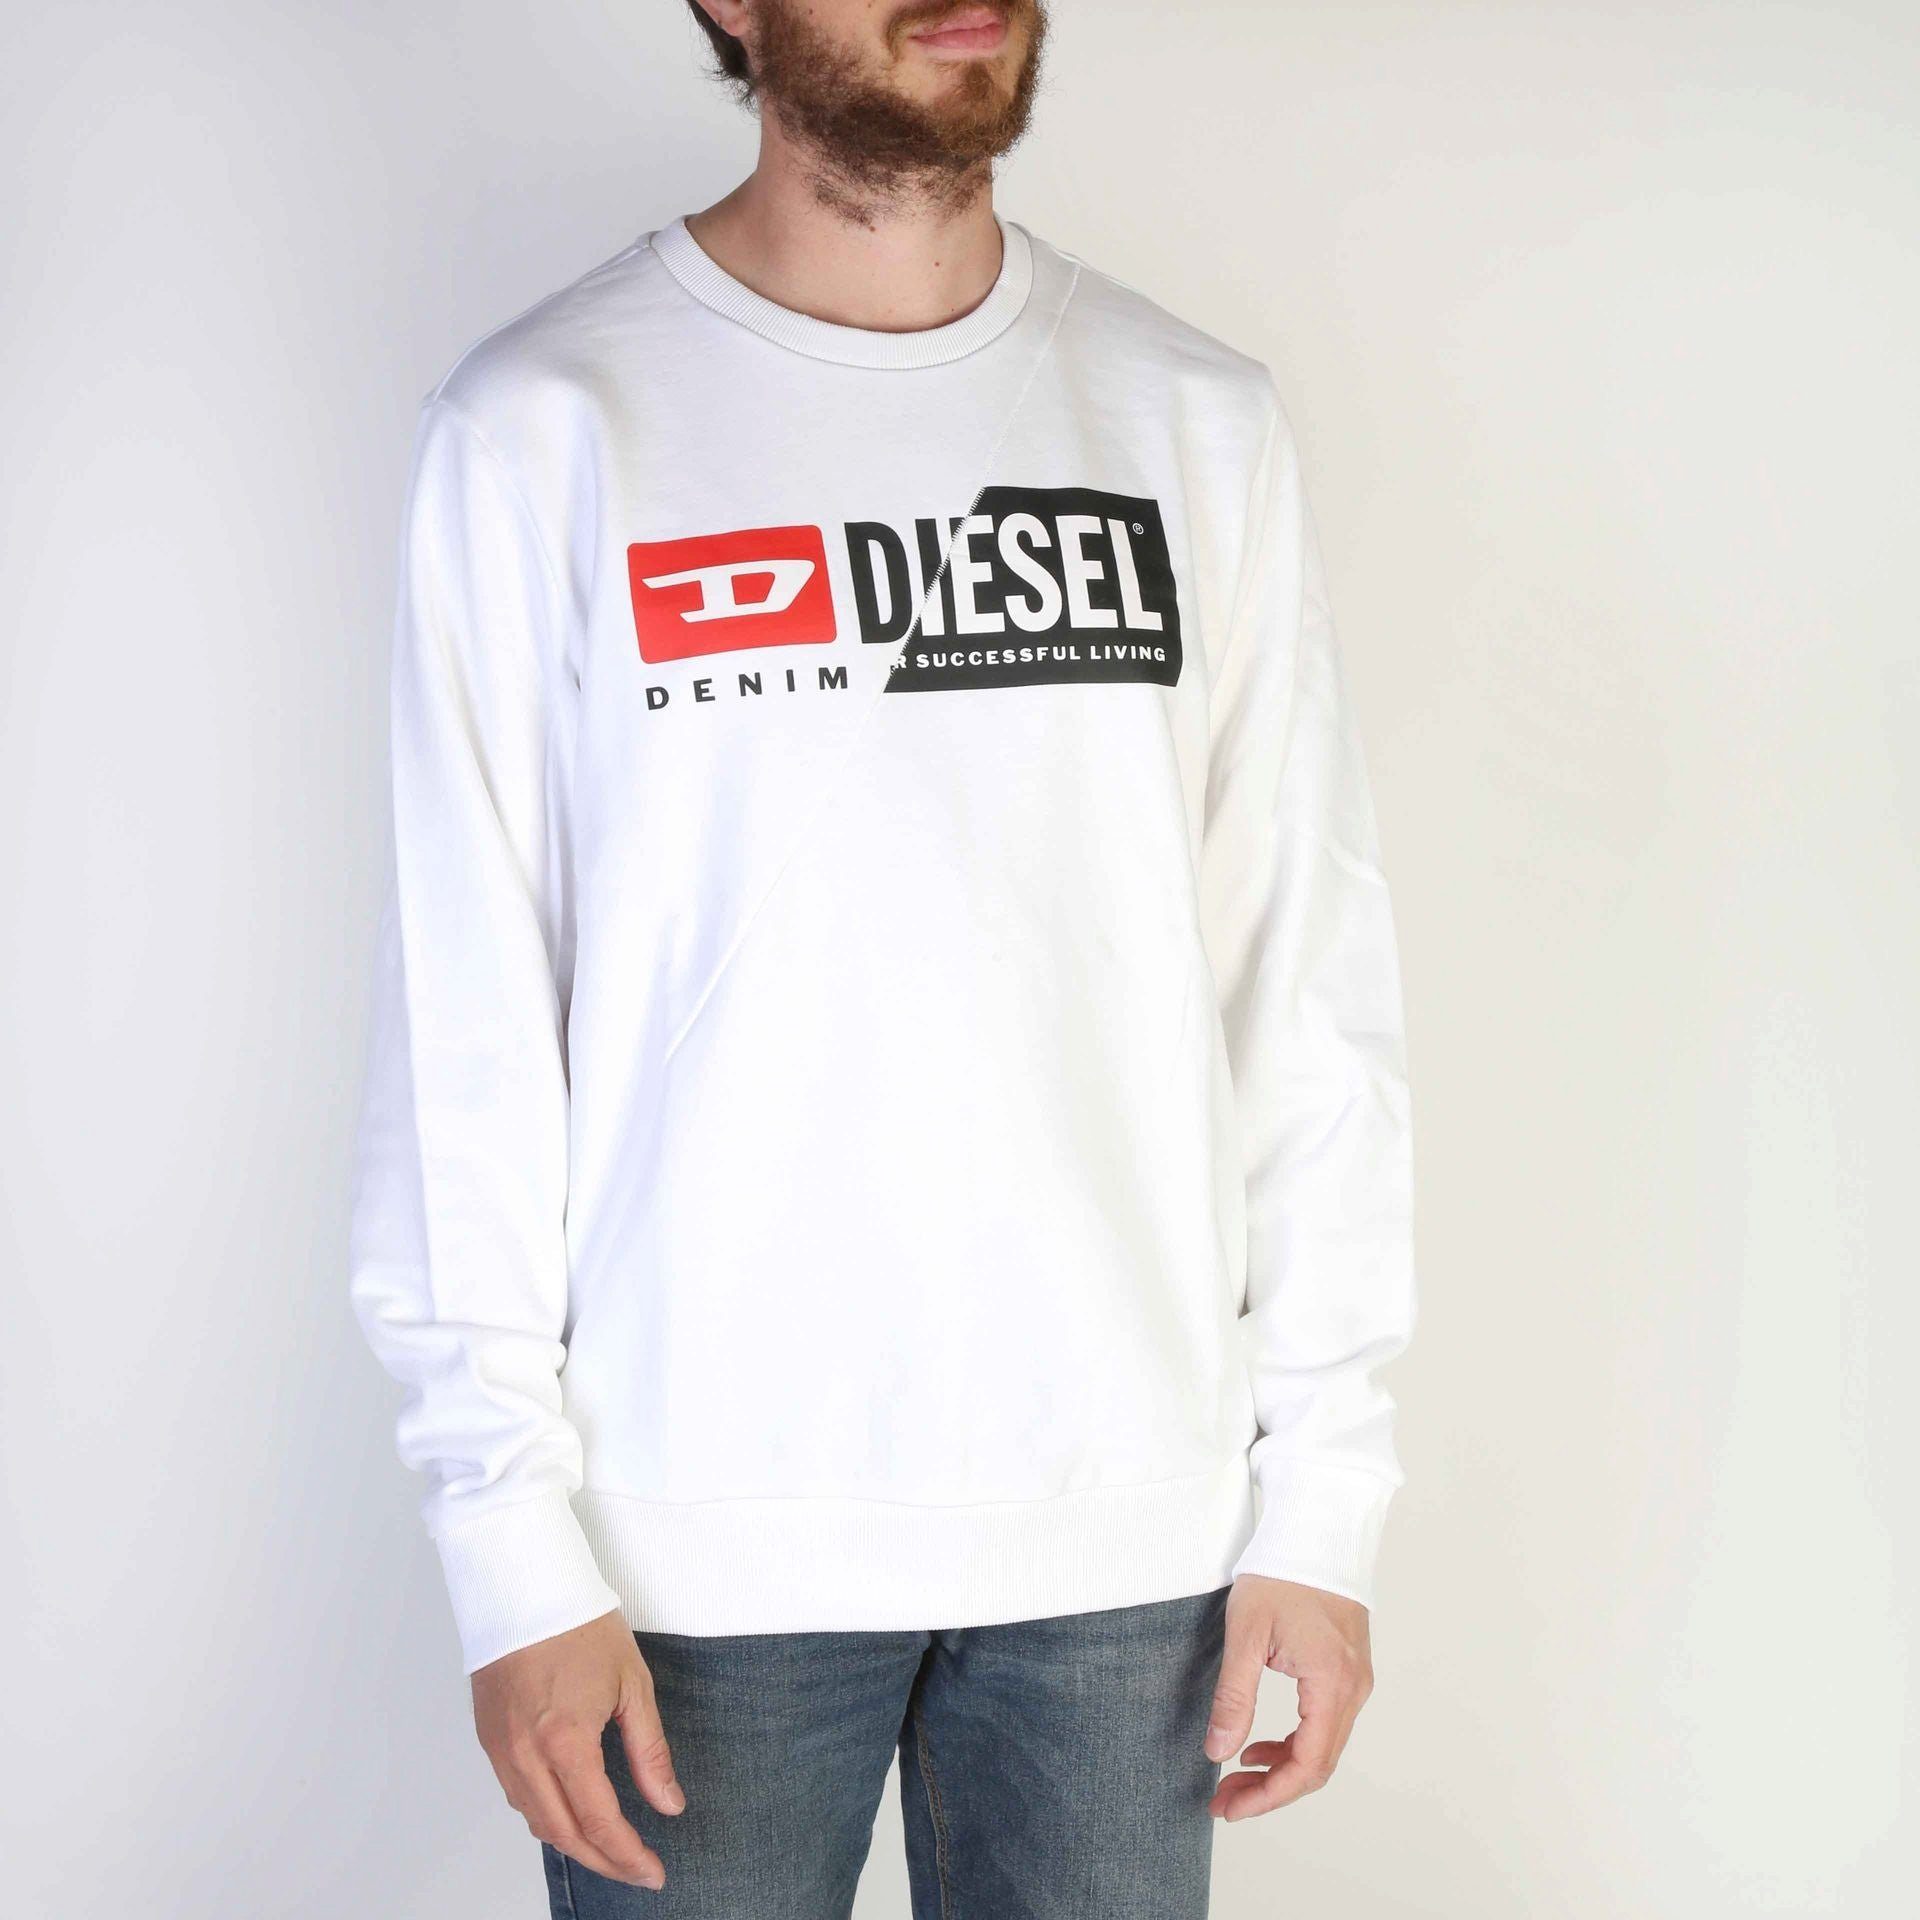 Diesel Sweatshirt Diesel Herren Sweatshirt Frühjahr/Sommer Kollektion, Weiß Komfort und Stil - Ihr neues Diesel Sweatshirt wartet! | Sweatshirts